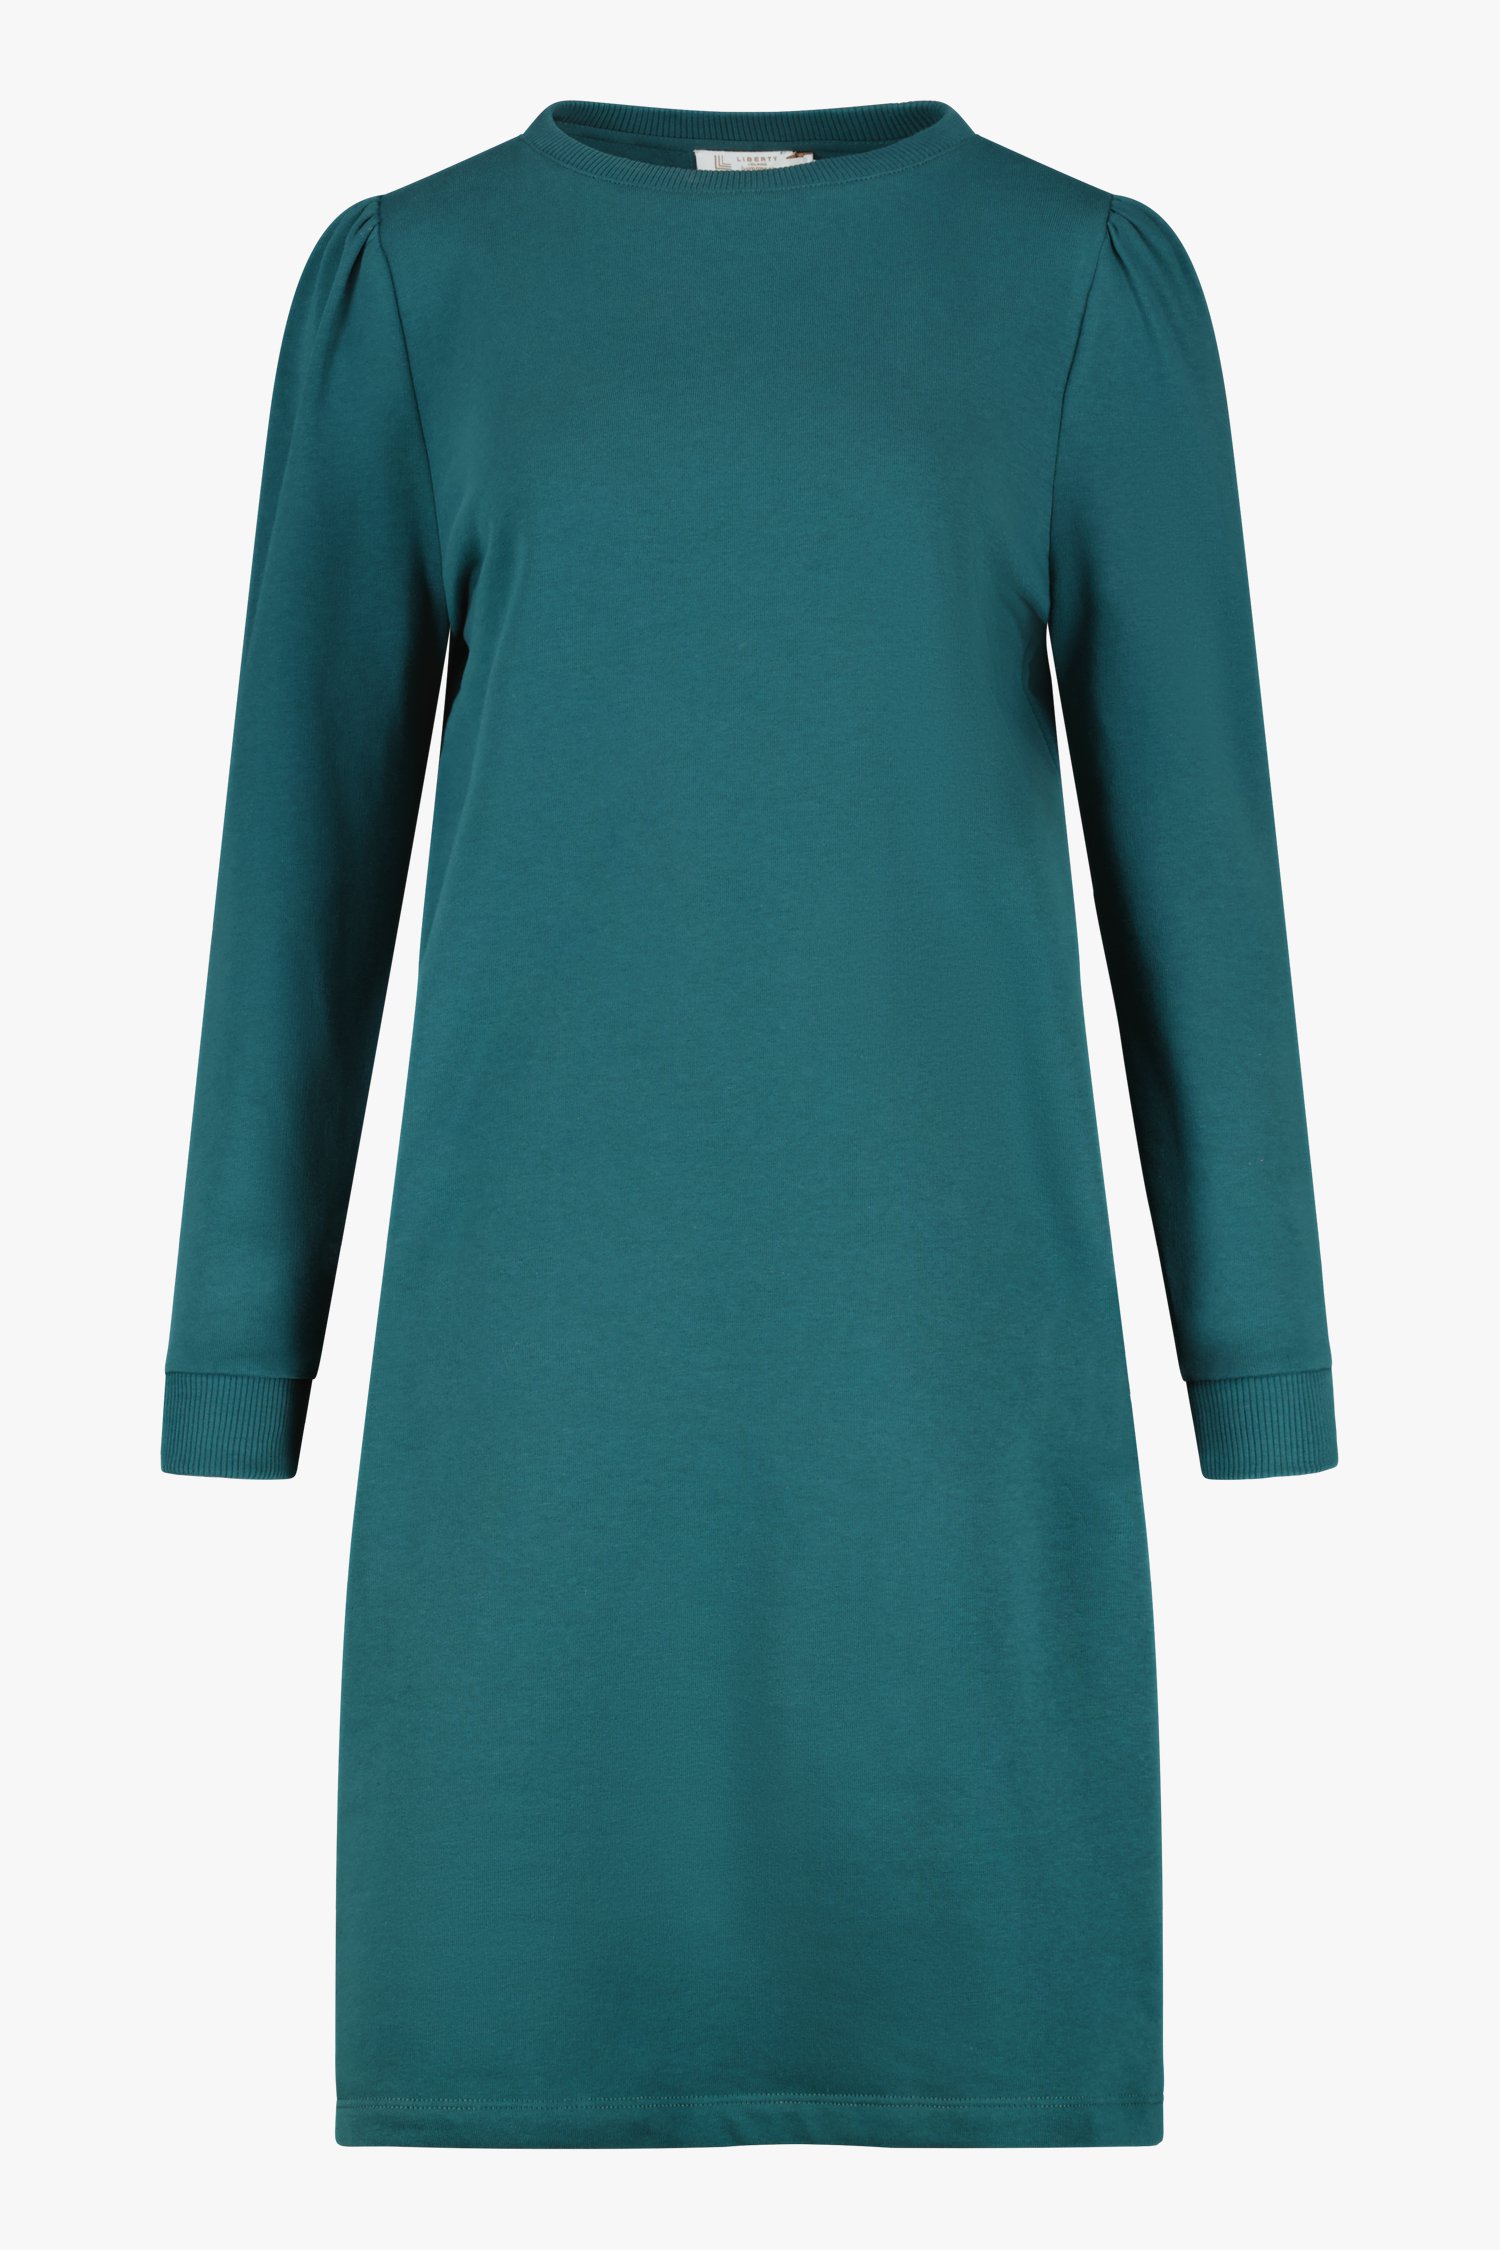 Groenblauwe sweaterjurk van Liberty Island homewear voor Dames